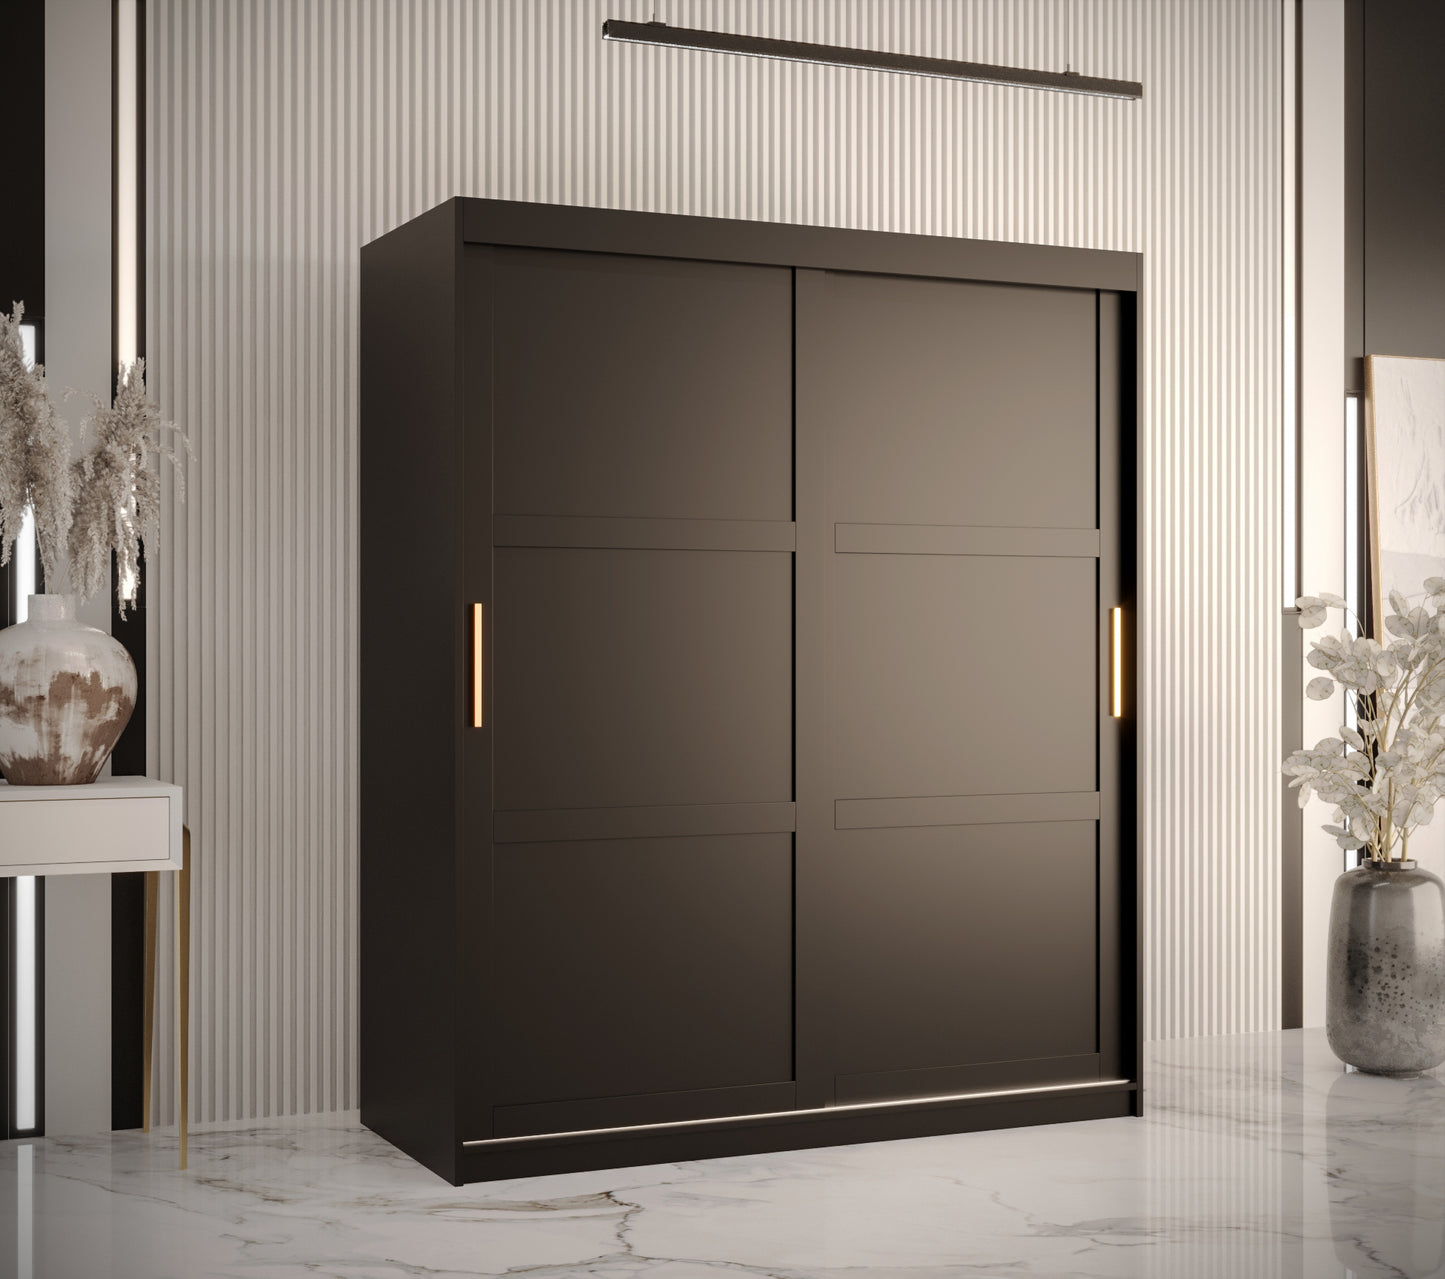 RAMIRA 1 - Wardrobe Sliding Door in Black or White Combinations, Shelves, Rails, Drawer optional >150cm<